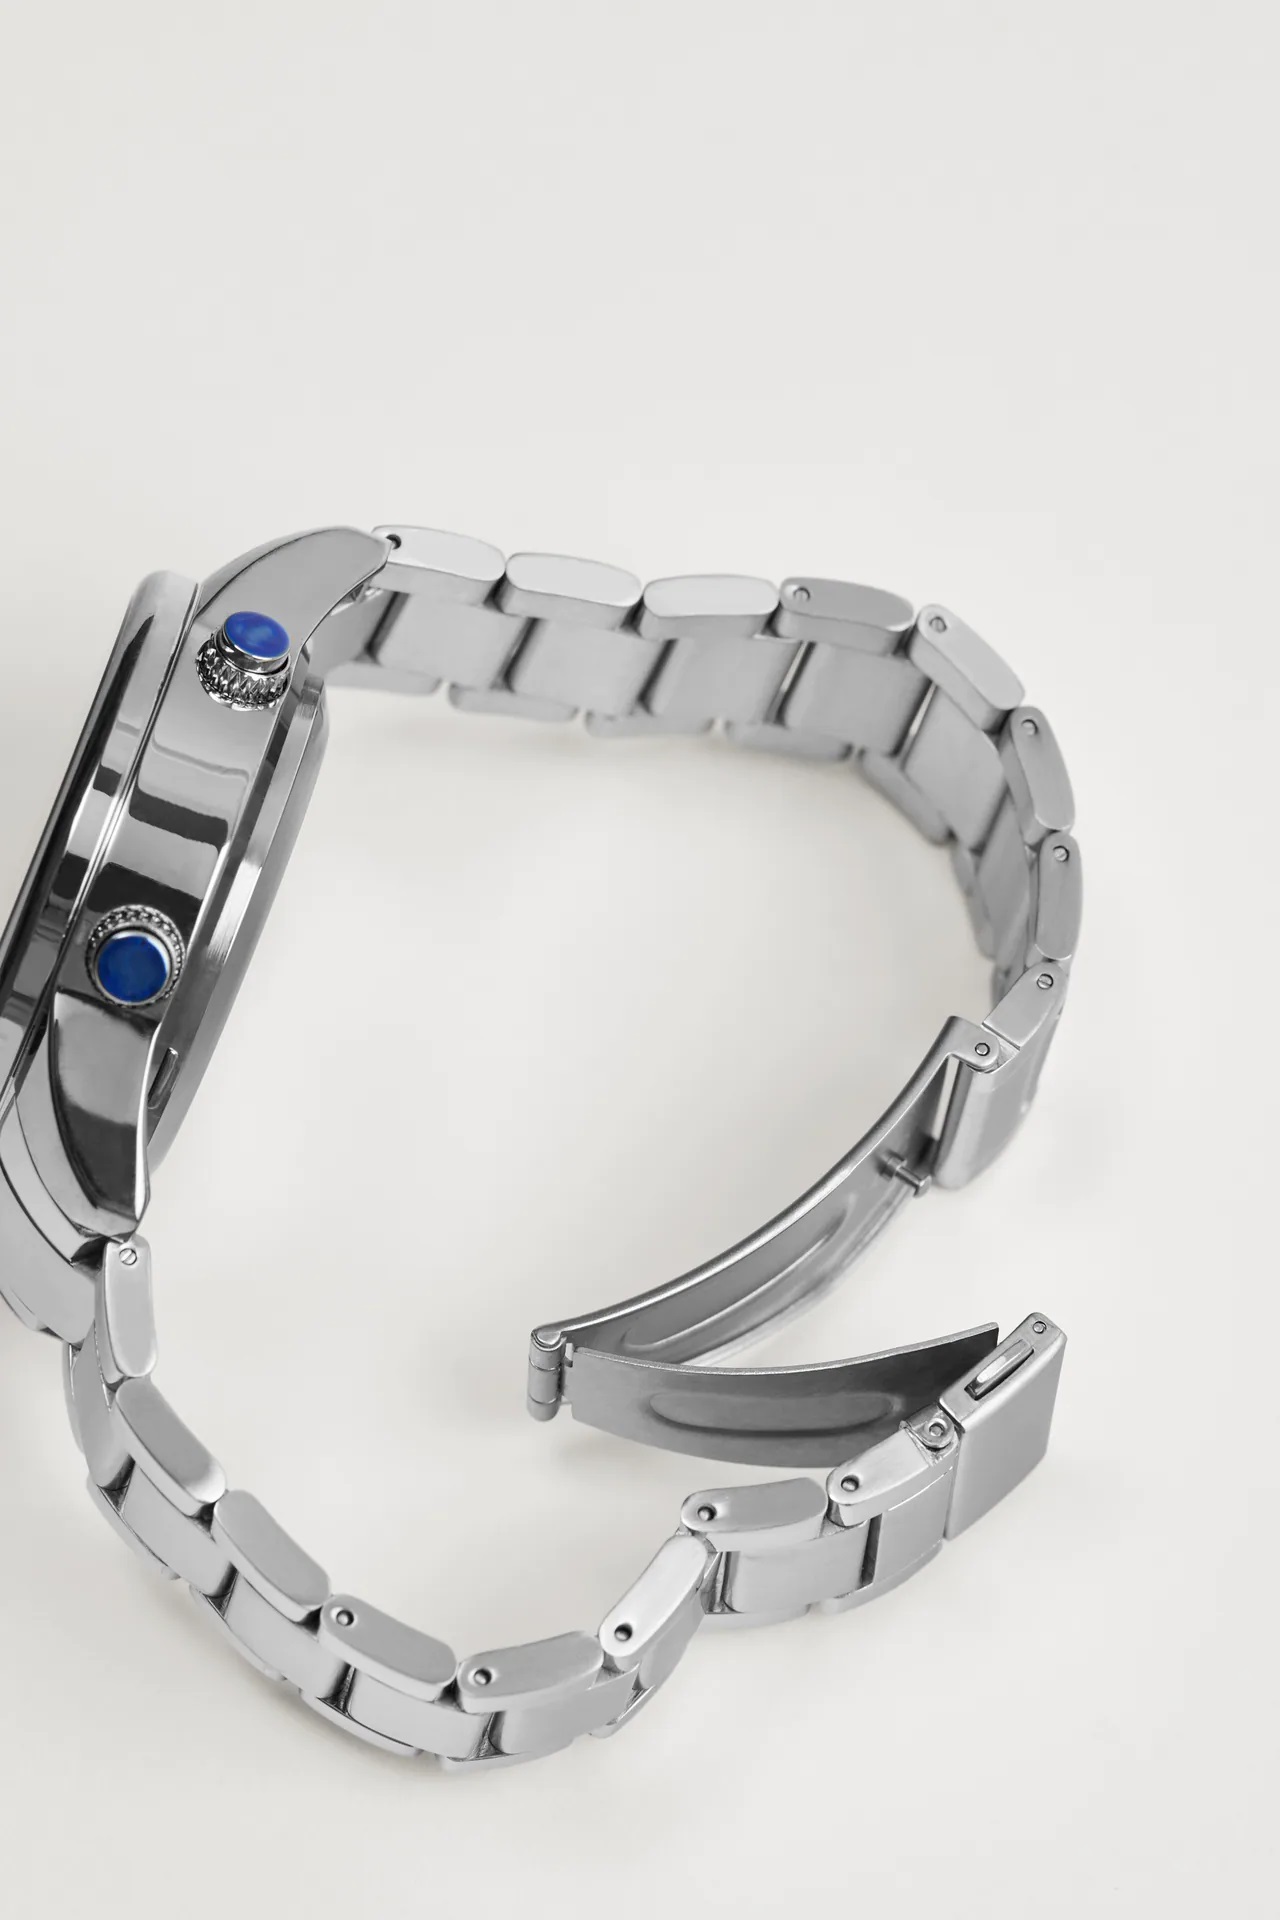 El complemento ideal a todos tus looks el reloj inteligente low cost de Zara